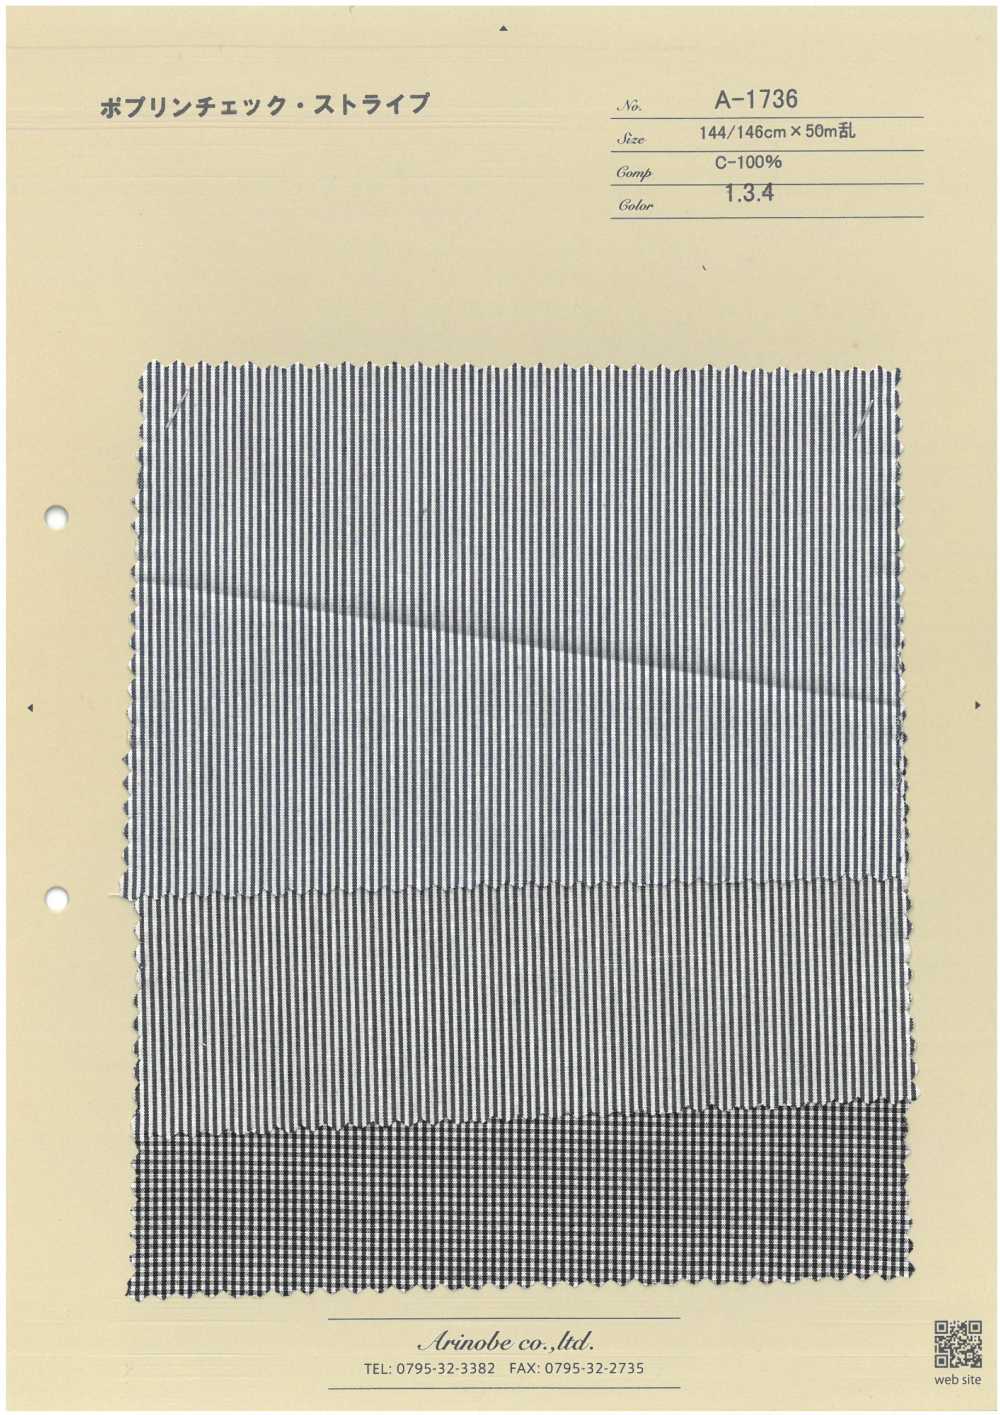 A-1736 Popeline-Karostreifen[Textilgewebe] ARINOBE CO., LTD.